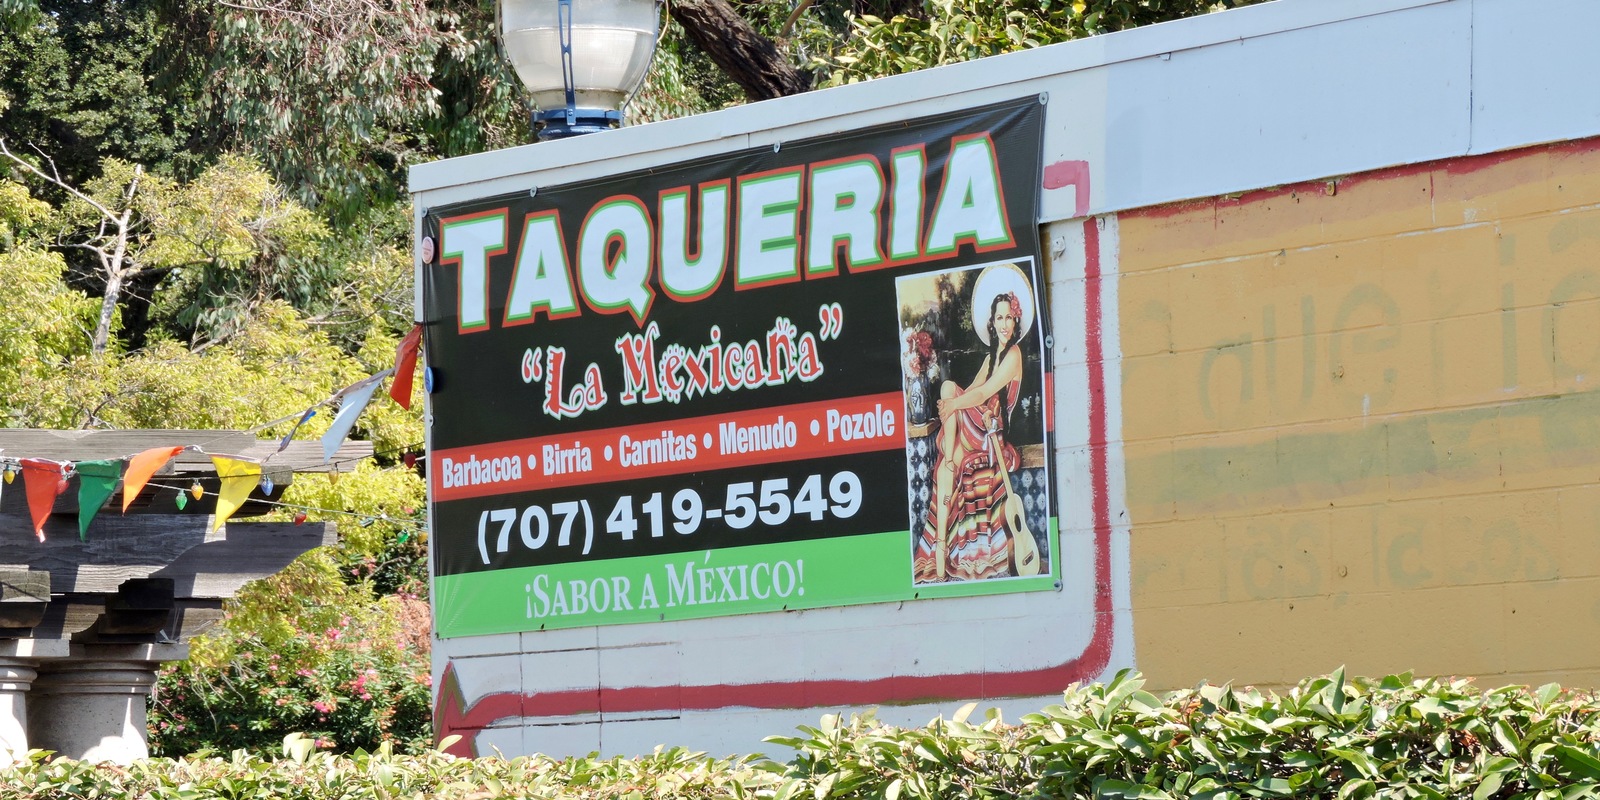 Image of Taqueria La Mexicana